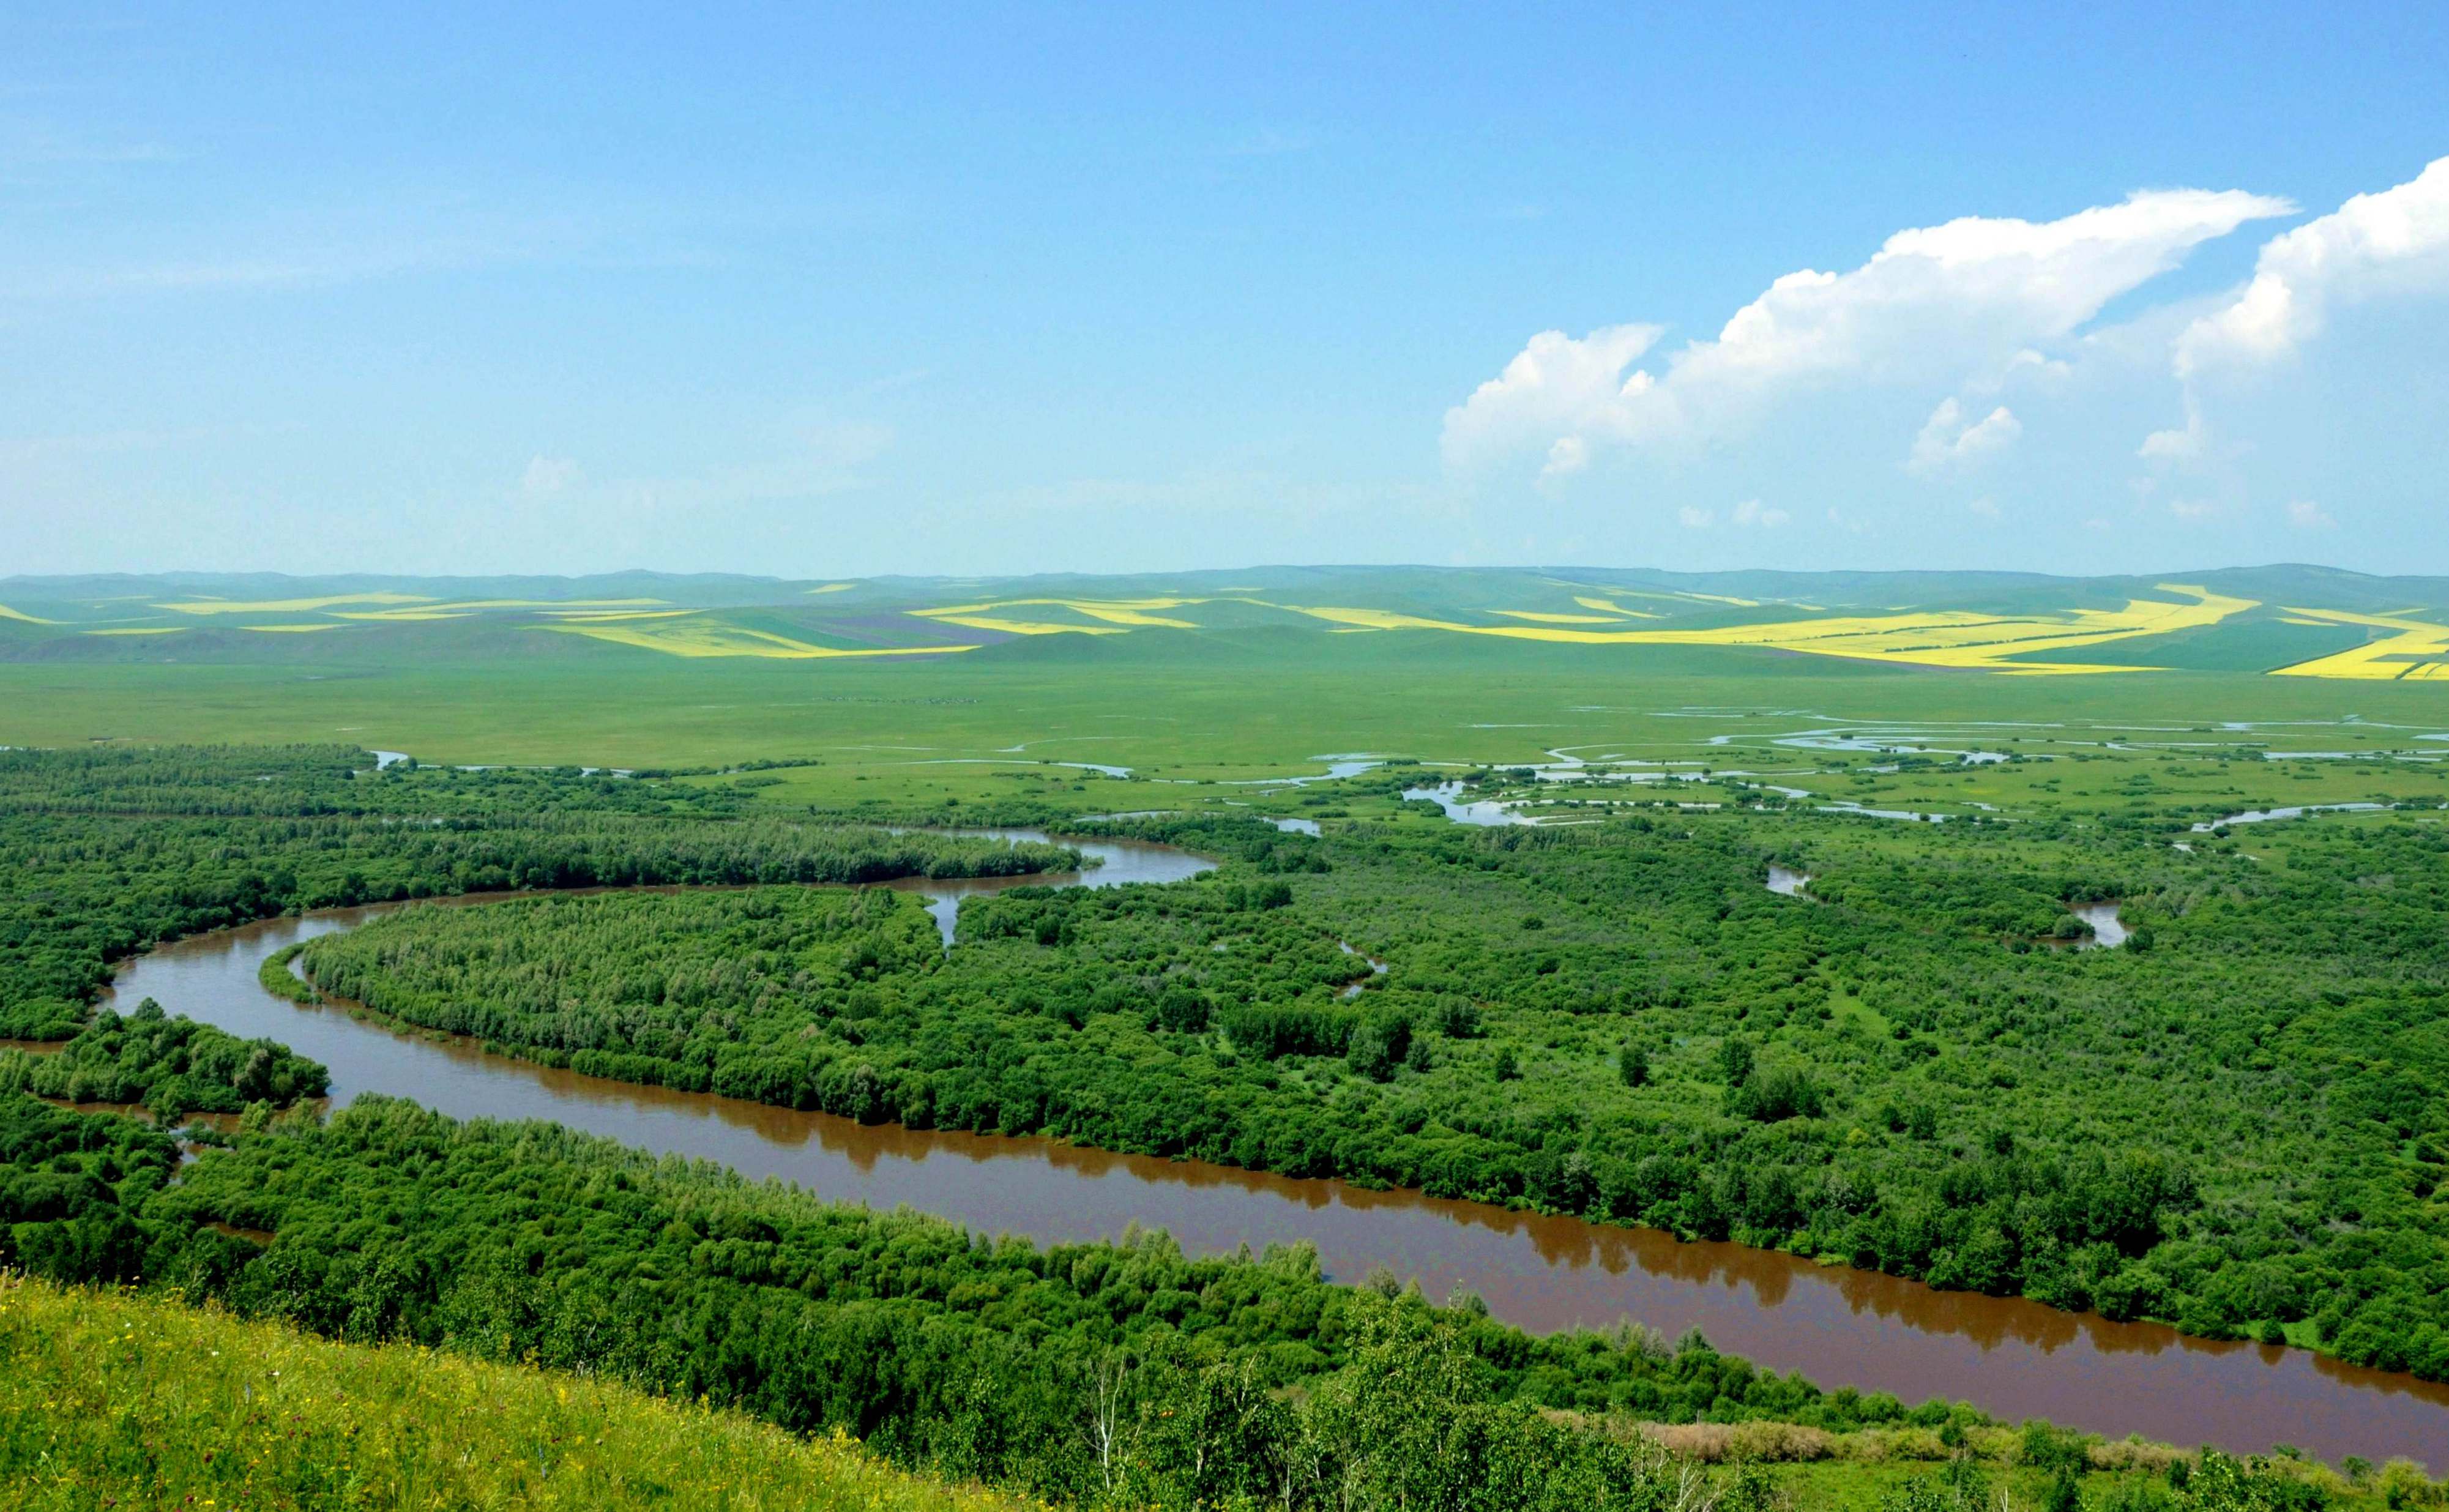 内蒙古根河被称为“中国冷极” 冬牧牛群与冰雪宛如一幅美丽冬景图